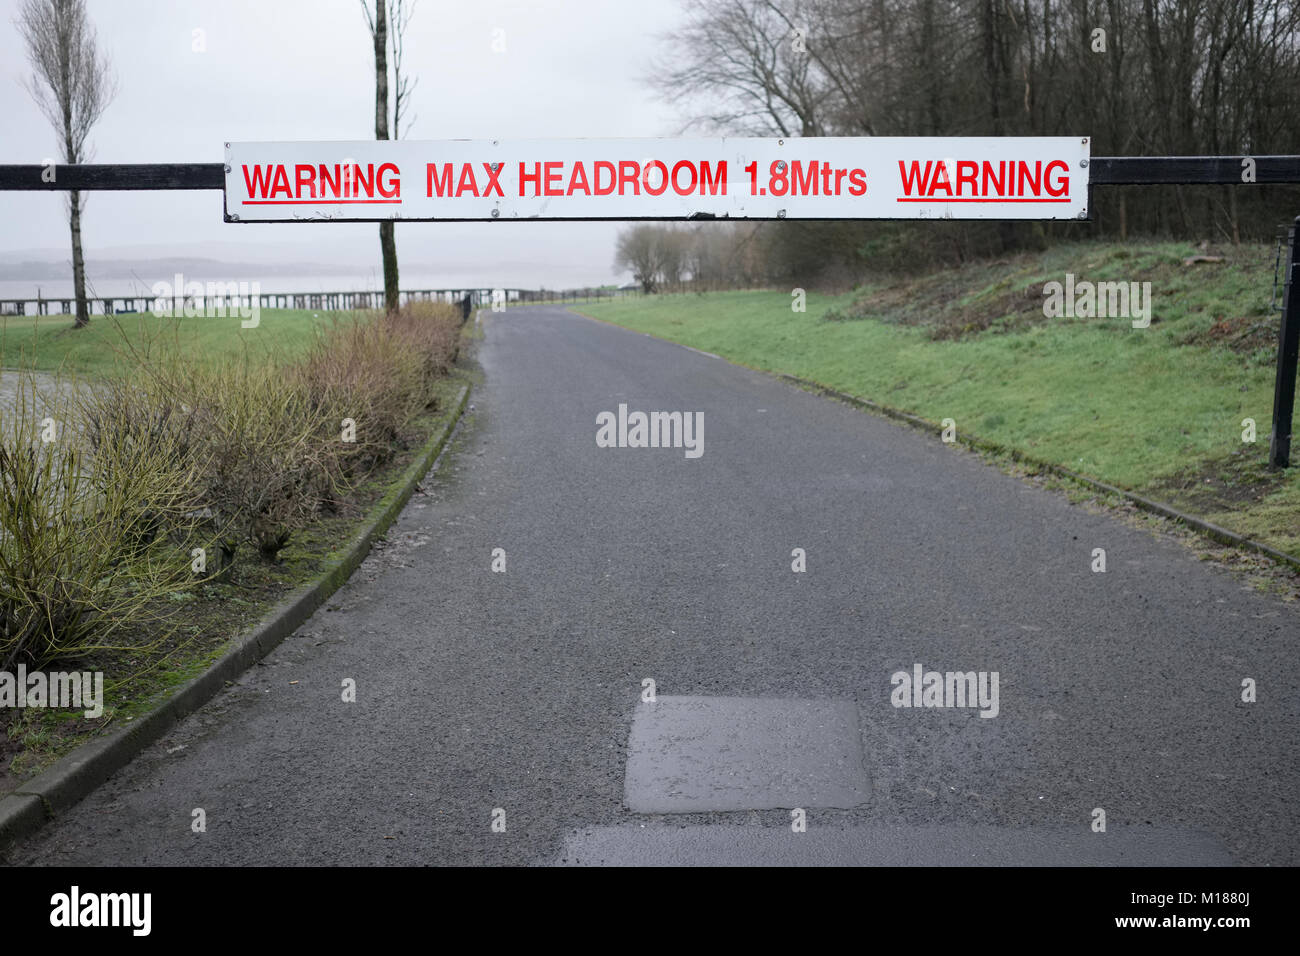 Max headroom signo de advertencia en la carretera para la seguridad de vehículos altos Foto de stock